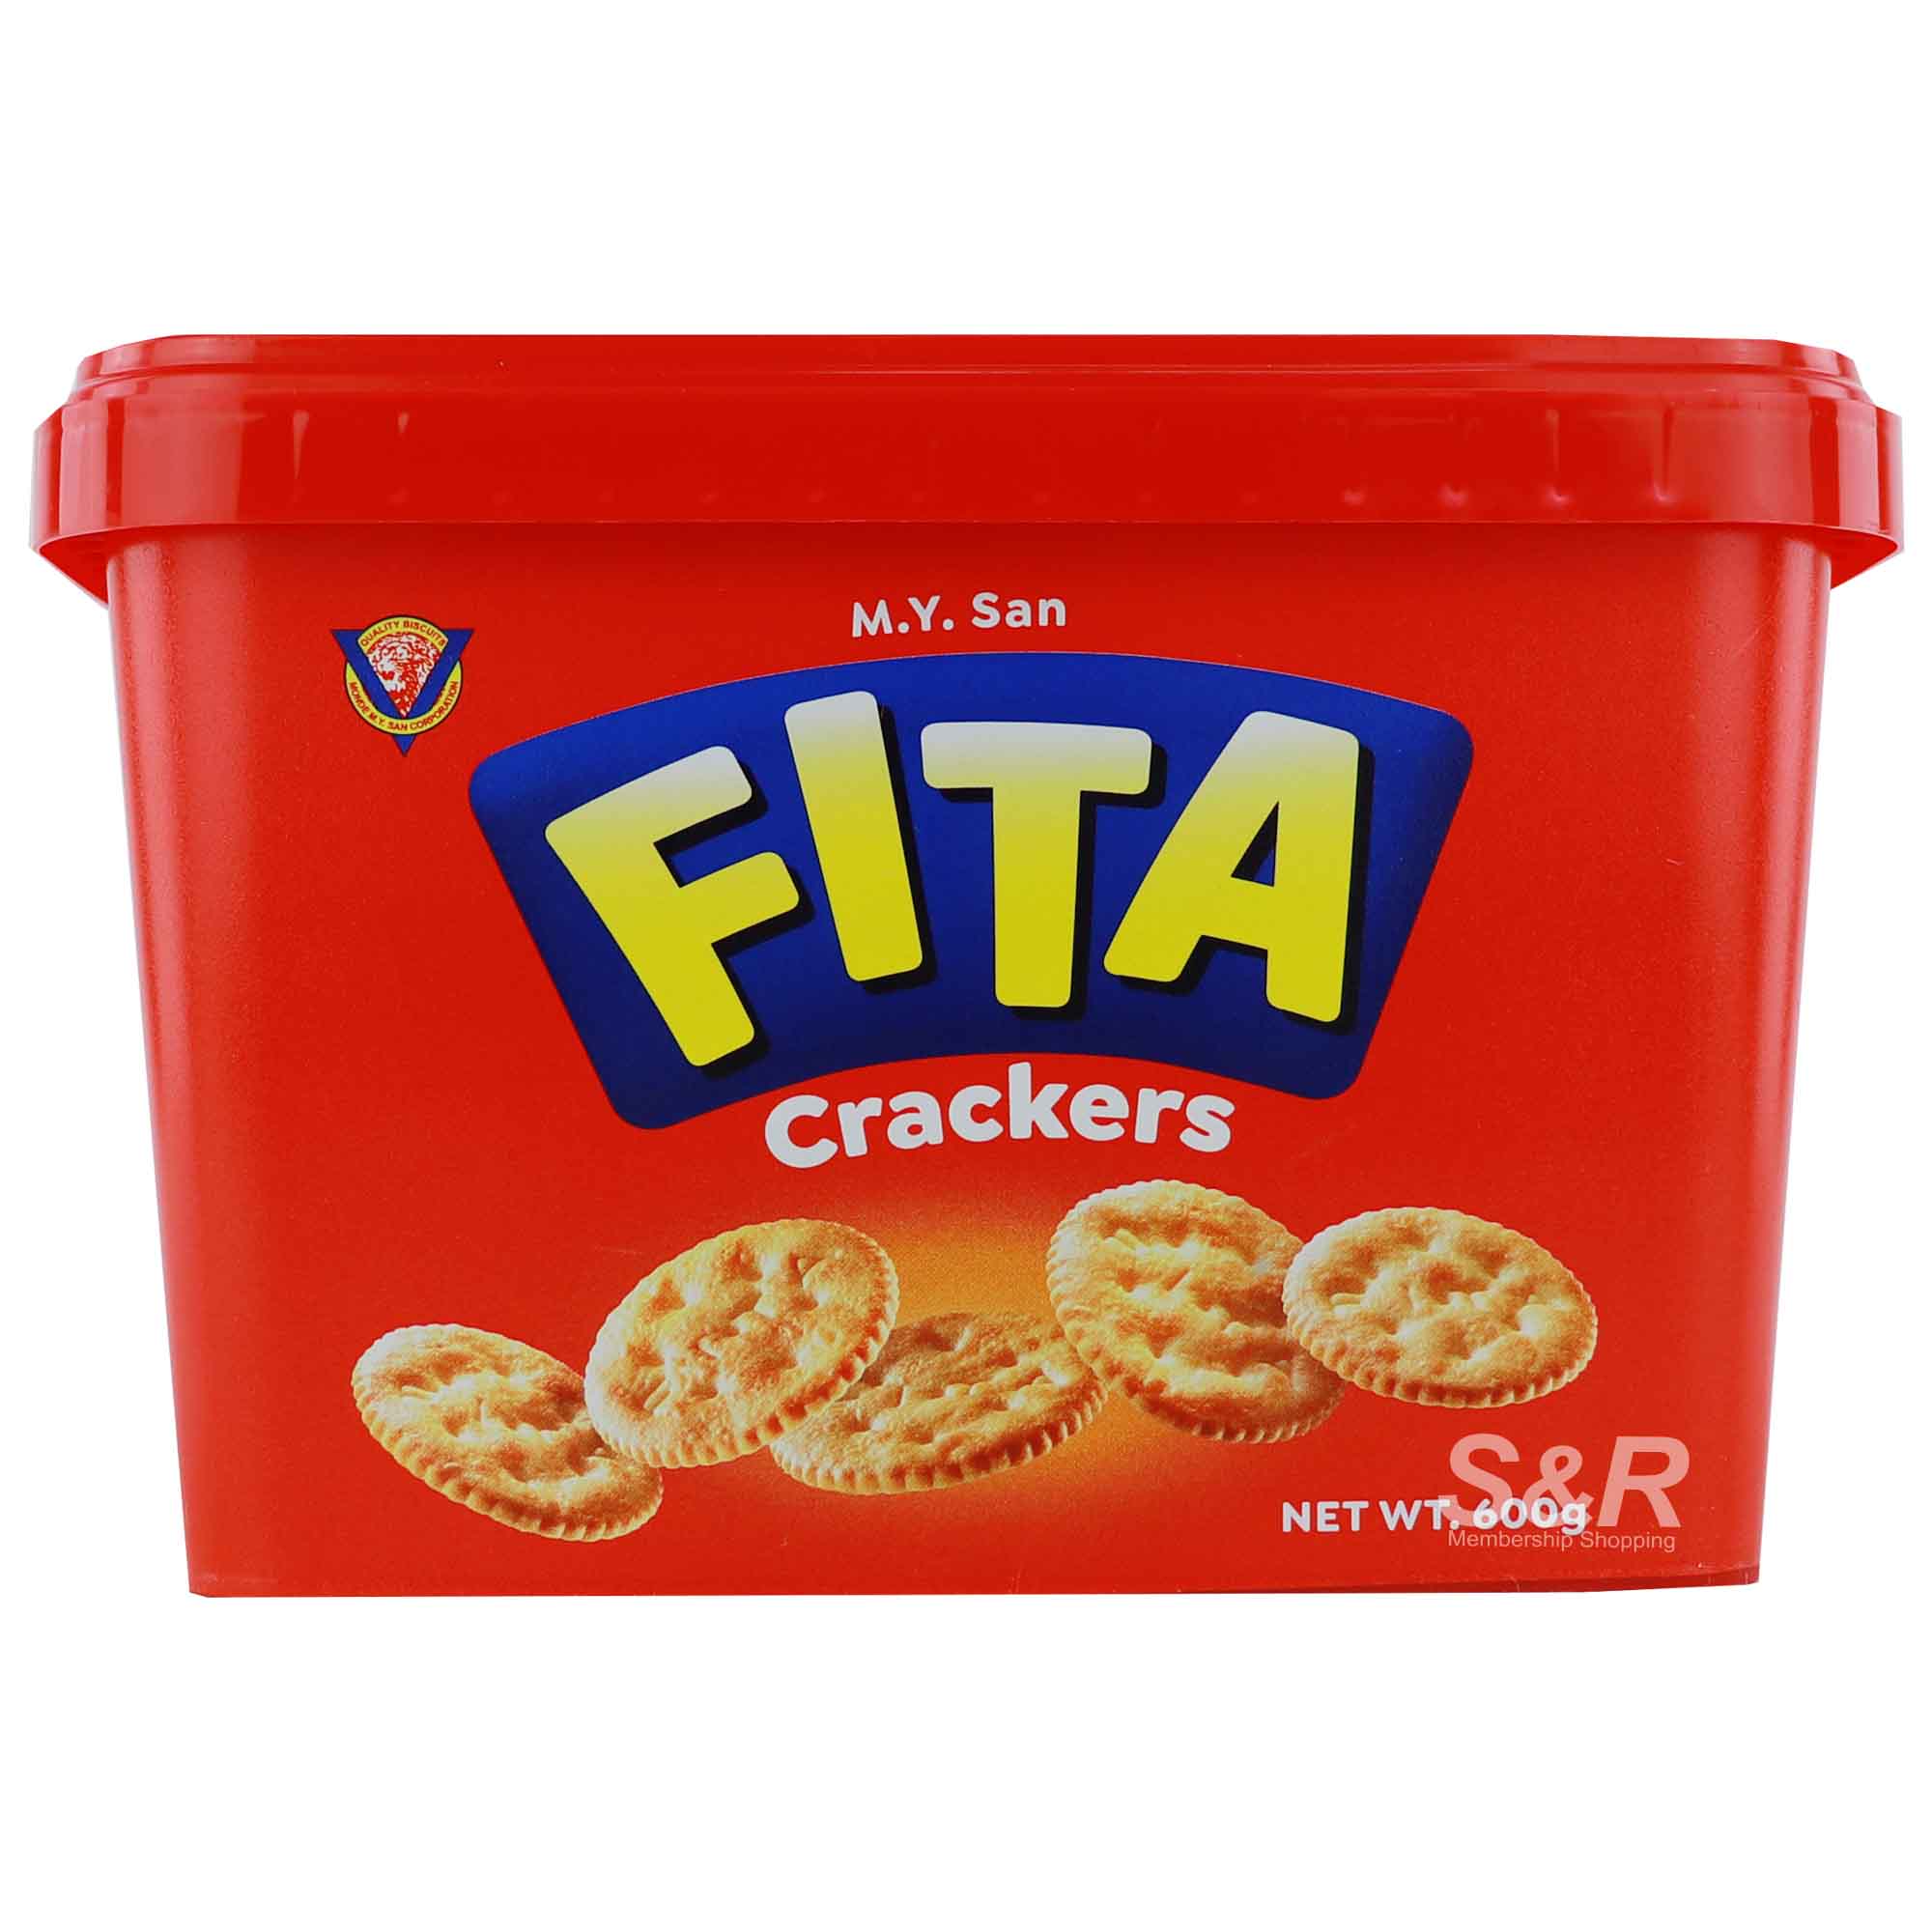 MY Fita Crackers 600g